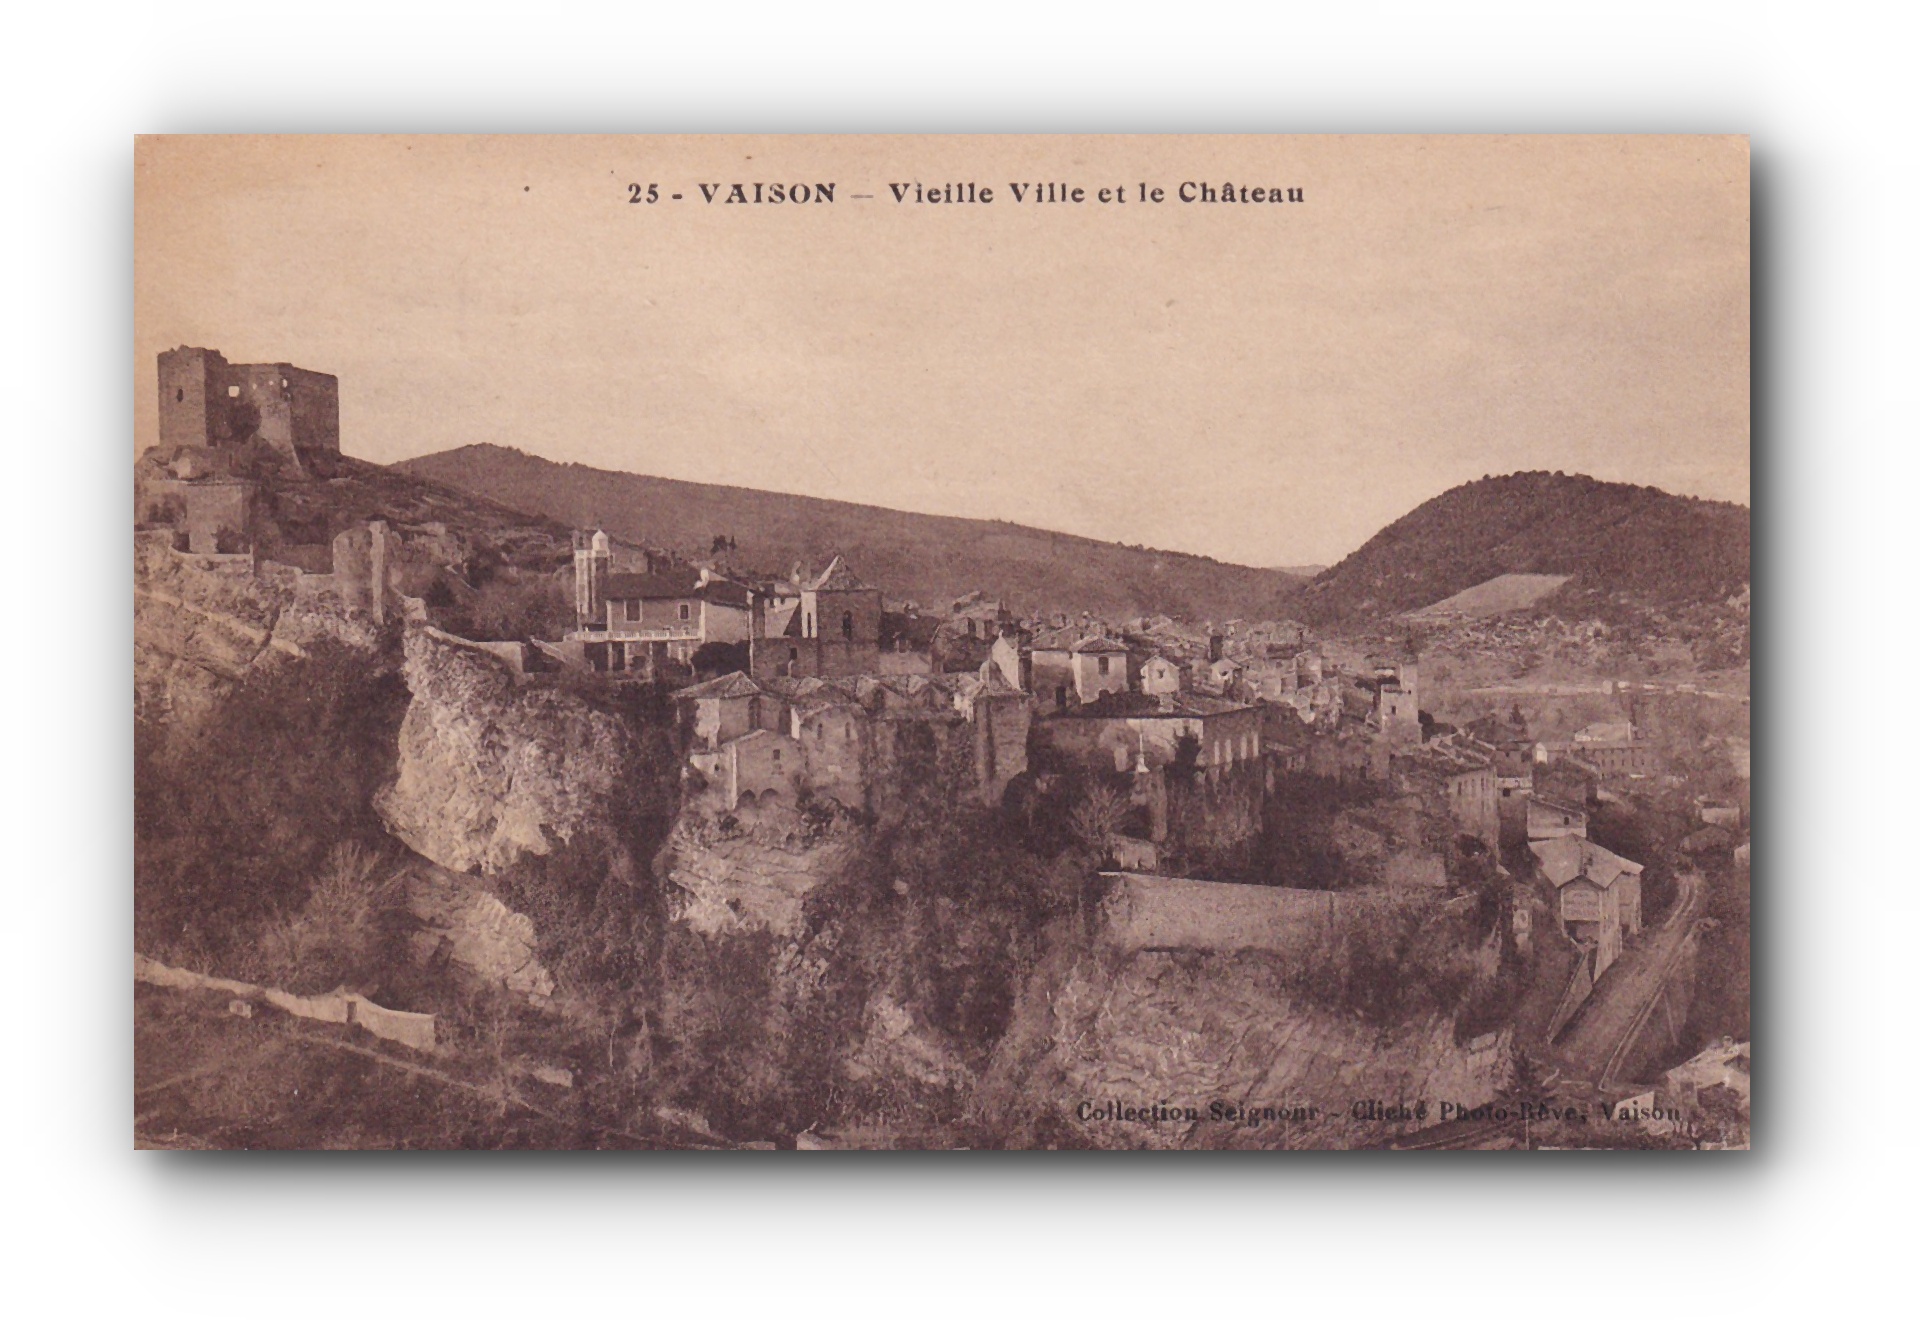 - VAISON - Vieille ville et le Château - 13.04.1925 -